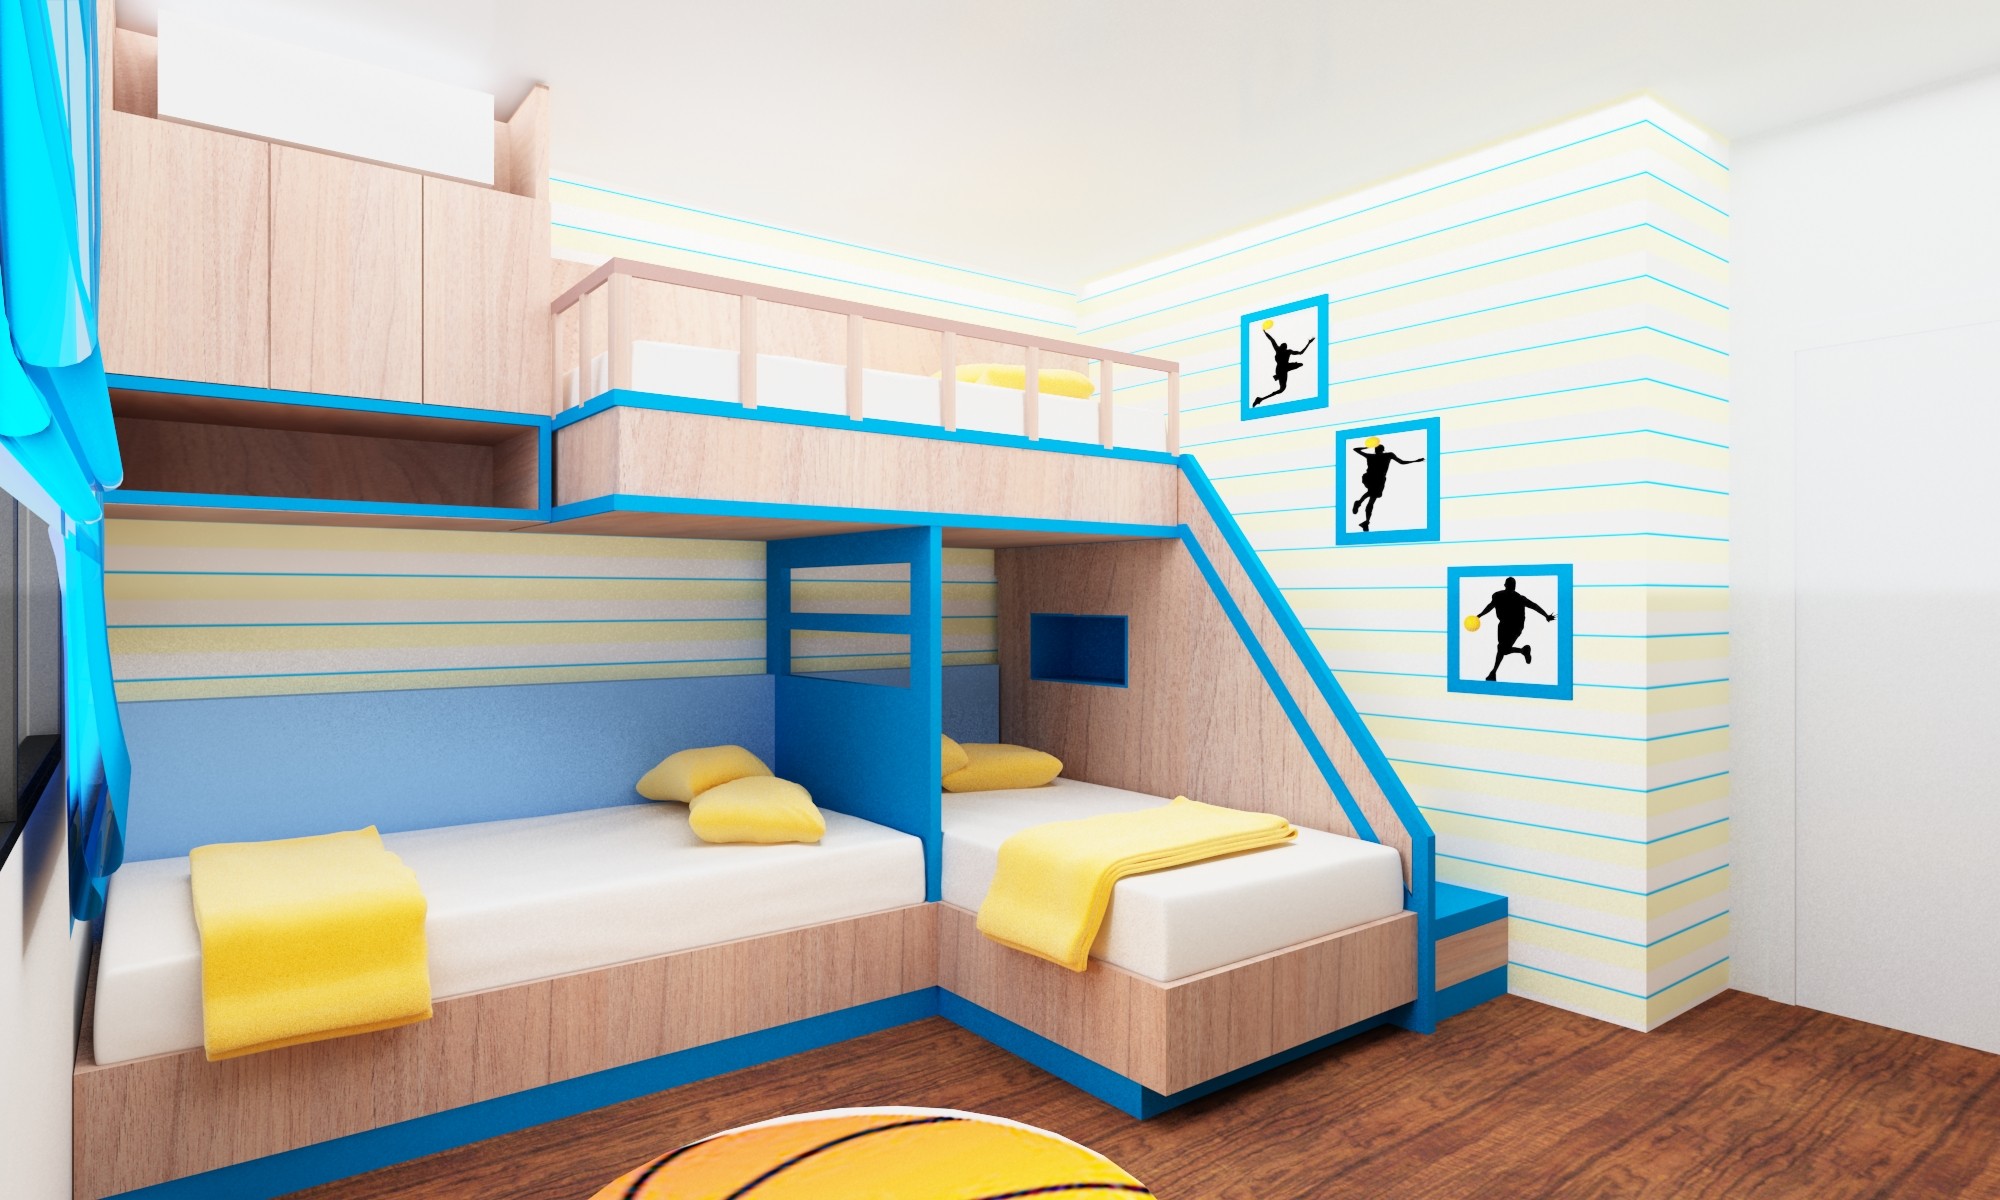 Комната трех 6. Кровать для троих разнополых детей. Детская комната для троих разнополых детей. Кровать чердак для разнополых детей. Спальня для двоих детей.